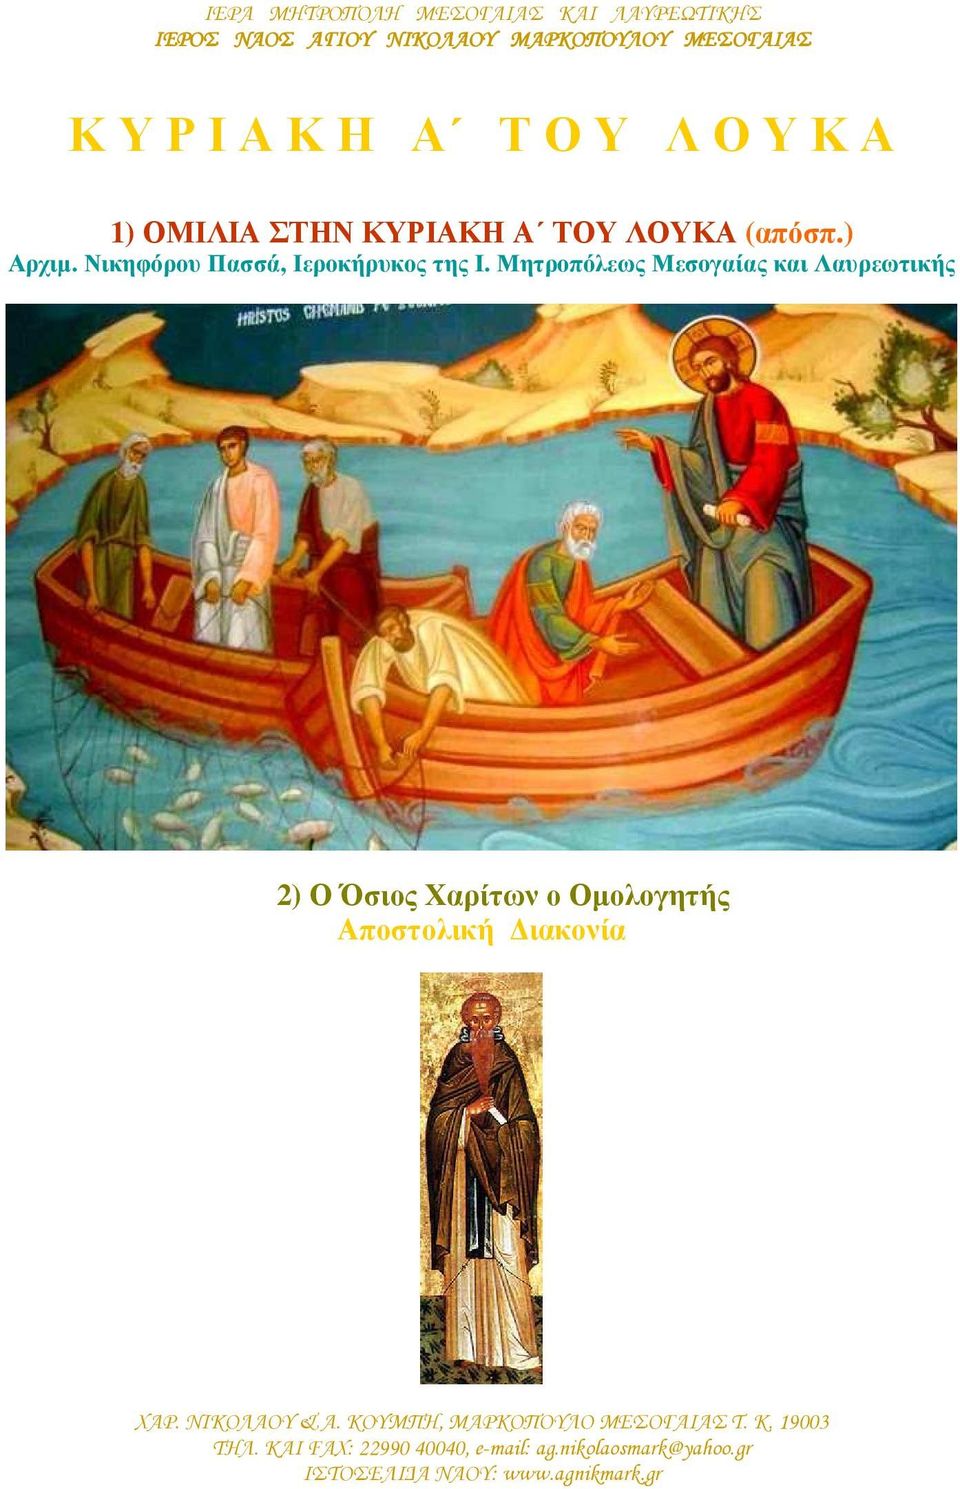 Μητροπόλεως Μεσογαίας και Λαυρεωτικής 2) Ο Όσιος Χαρίτων ο Οµολογητής Αποστολική ιακονία ΧΑΡ. ΝΙΚΟΛΑΟΥ & Α.